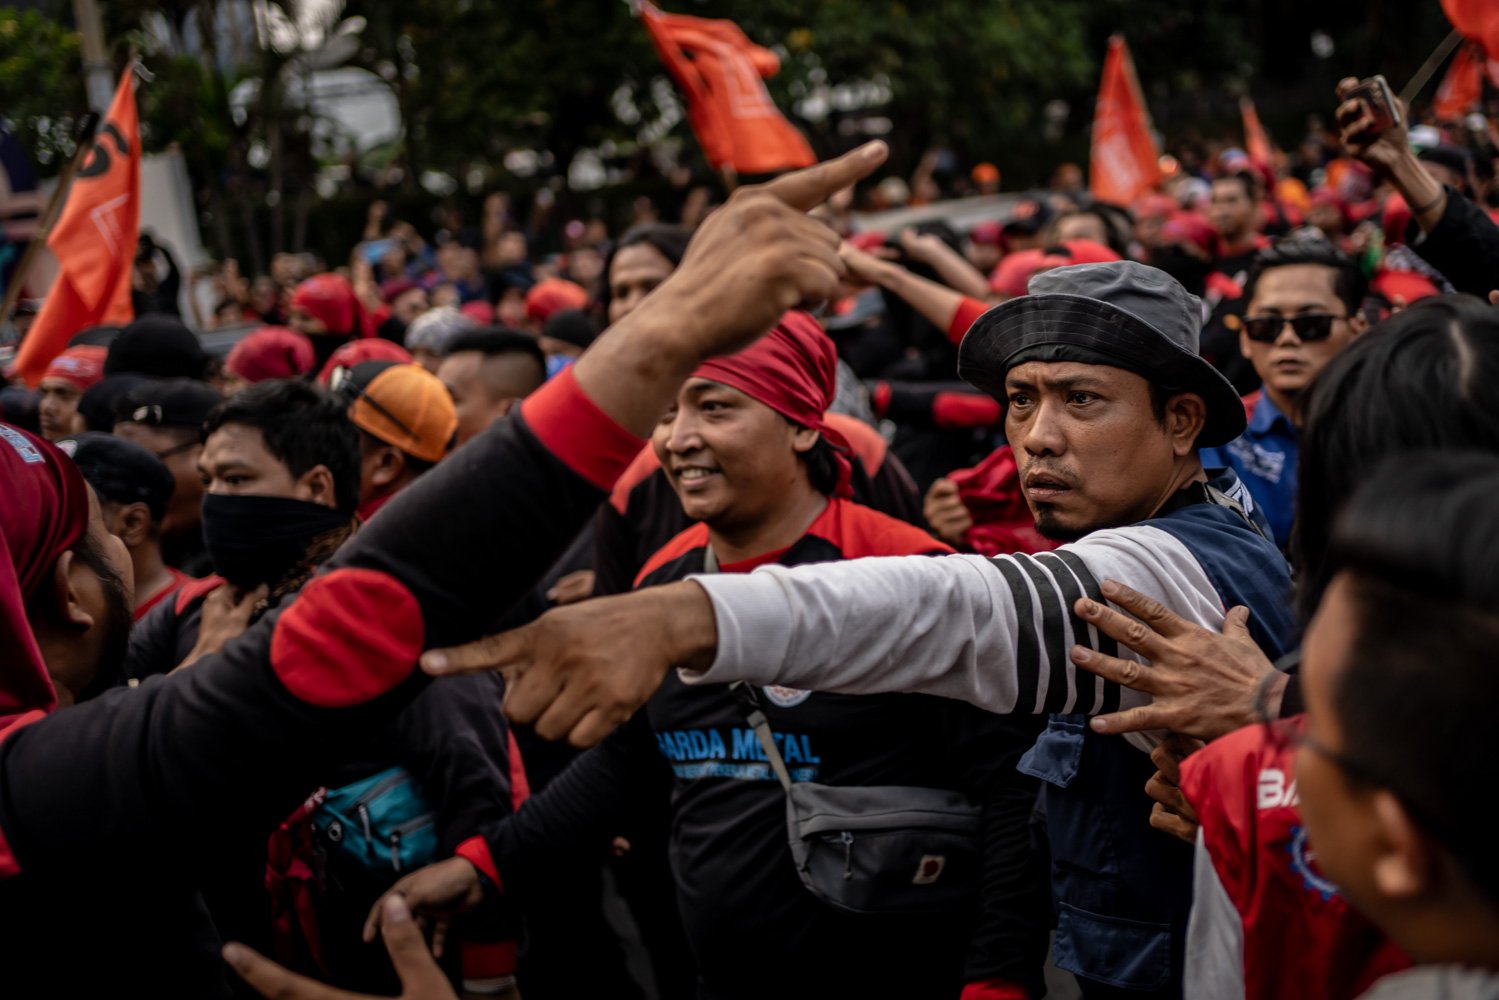 Sejumlah massa yang tergabung dari berbagai serikat buruh melakukan unjuk rasa di kawasan Patung Kuda Arjuna Wiwaha, Jakarta, Senin (2/10). Peserta aksi yang terdiri dari sejumlah organisasi buruh melakukan aksi dari Jalan MH Thamrin hingga kawasan Patung Kuda Arjuna Wiwaha. Aksi mereka kali ini bertepatan dengan pembacaan uji formil mengenai Undang-Undang (UU) Cipta Kerja oleh Mahkamah Konstitusi (MK). Dalam putusannya MK menolak gugatan uji formil UU Cipta Kerja yang dilayangkan sejumlah kelompok buruh.